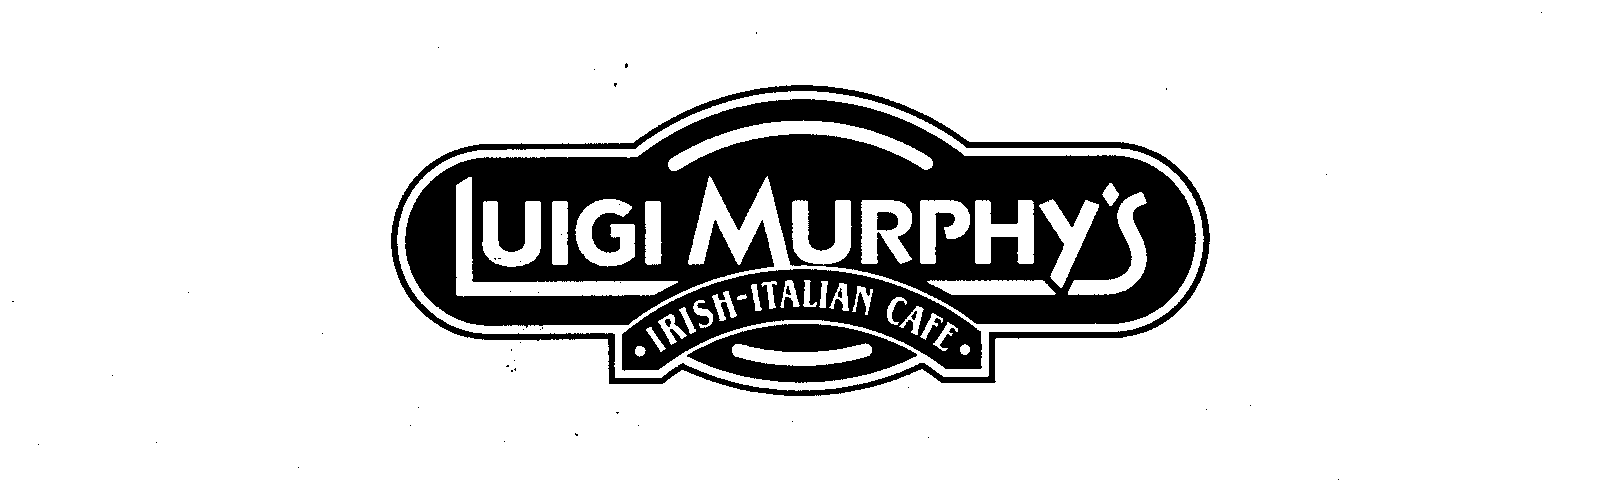  LUIGI MURPHY'S IRISH-ITALIAN CAFE